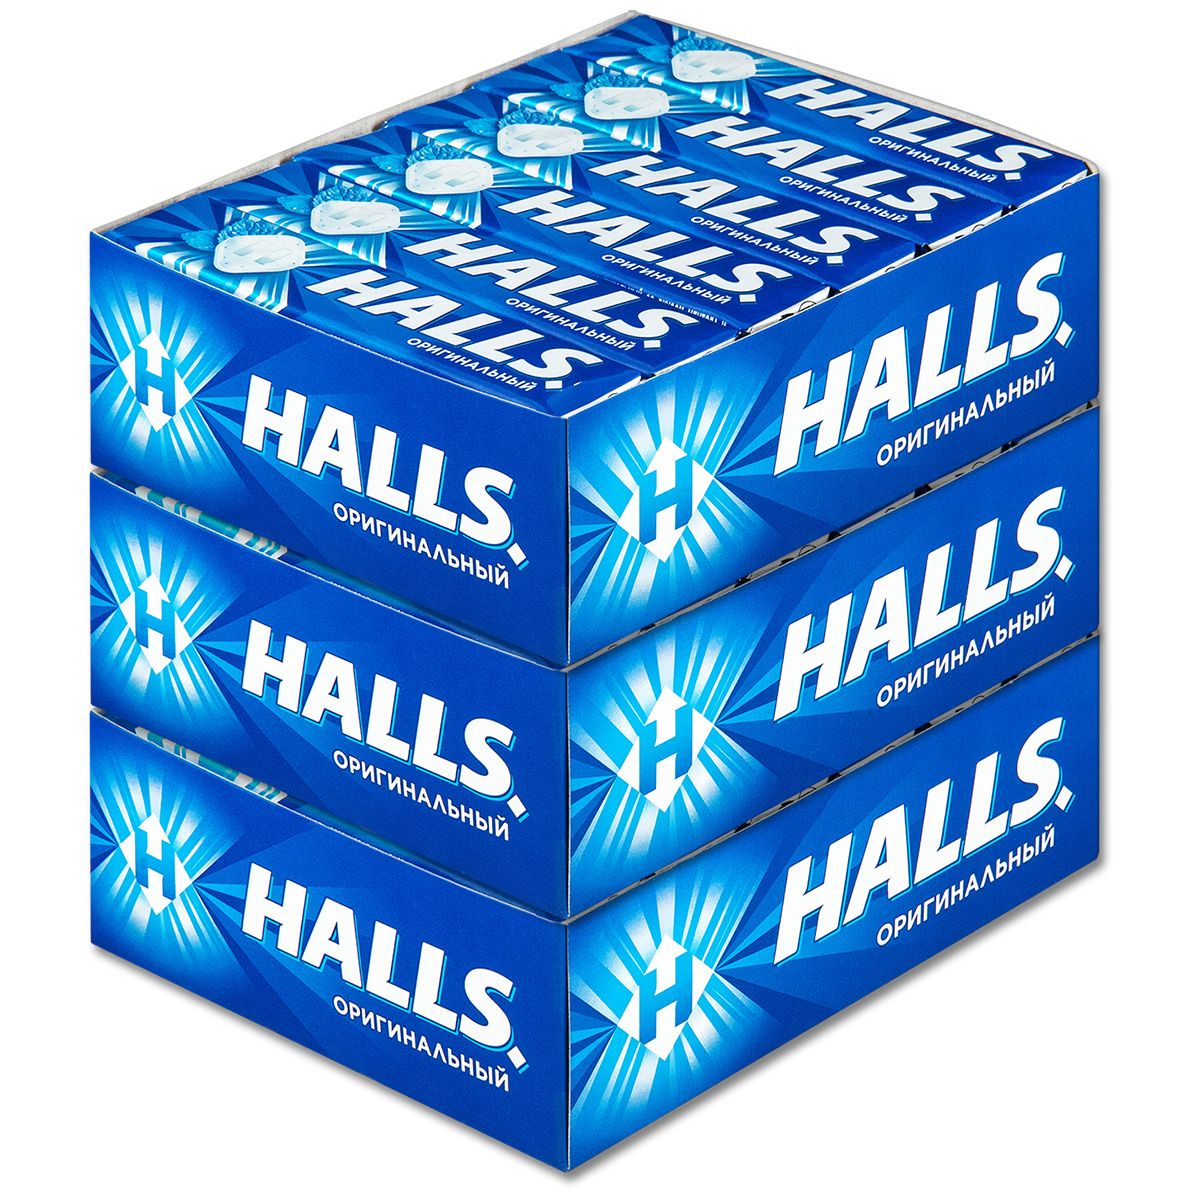 Halls вкусы. Halls леденцы. Halls оригинальный. Halls синий. Halls леденцы синие.